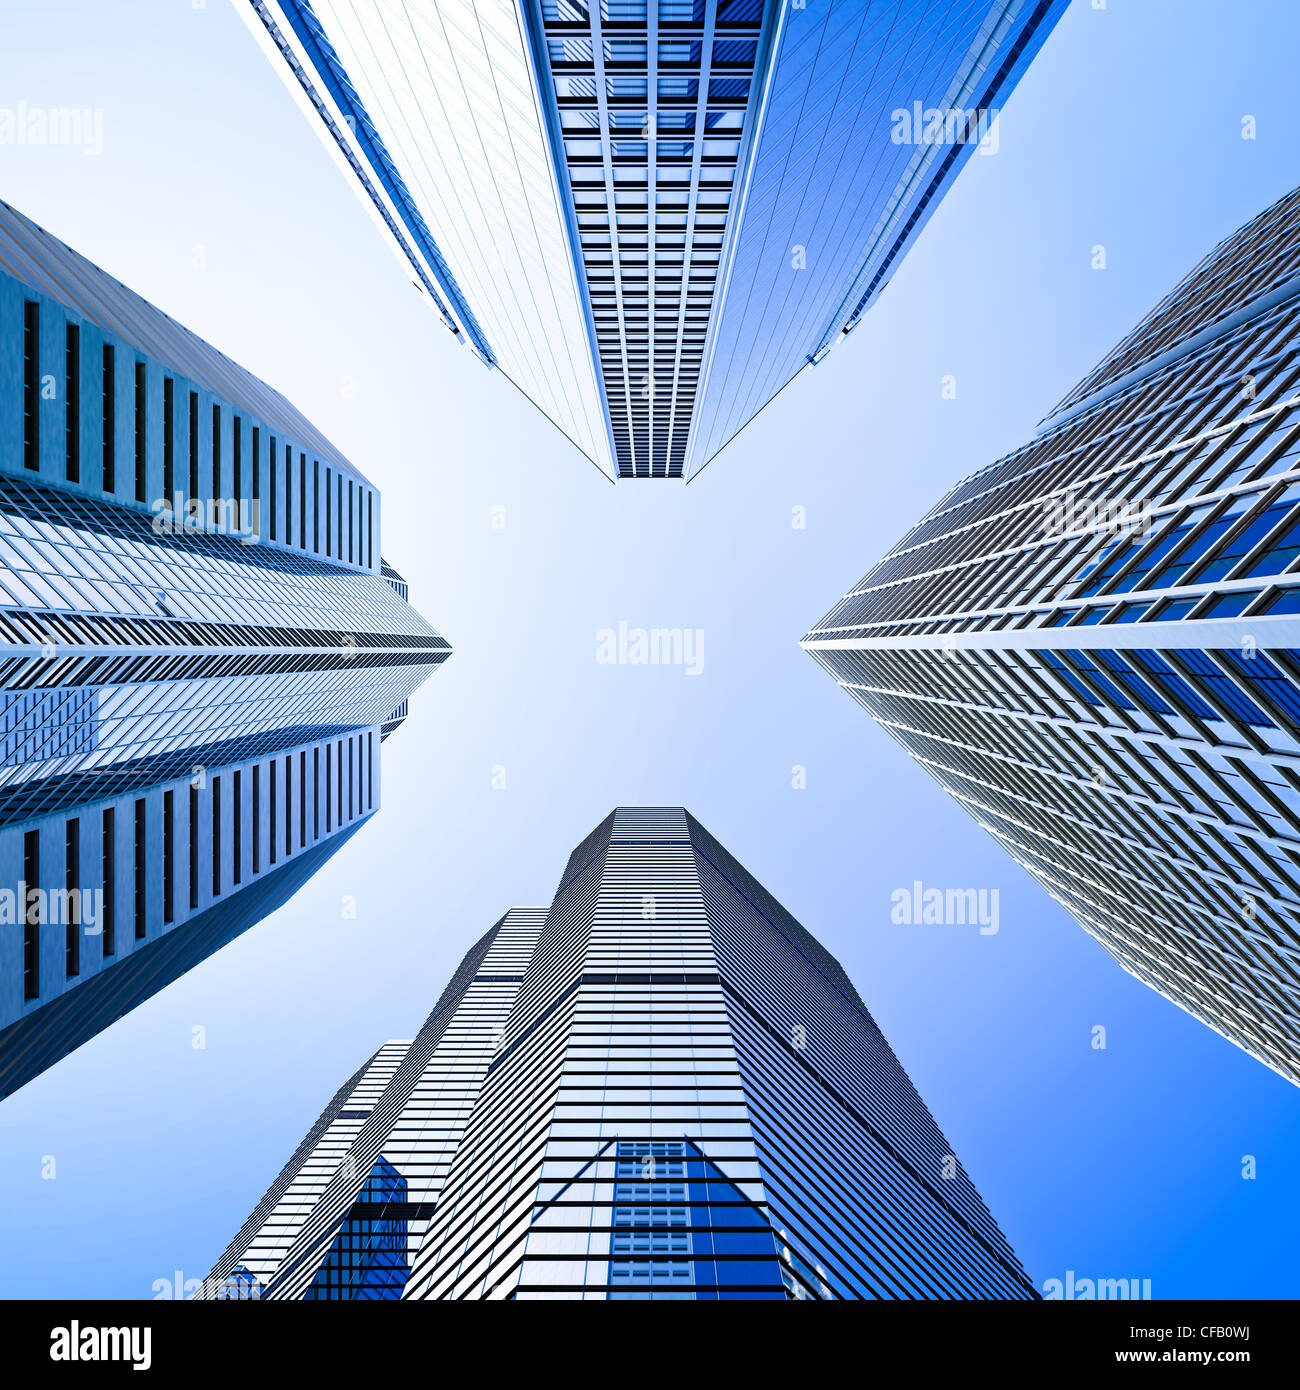 Vier Highrise Glas Wolkenkratzer Gebäude geringer Schnittwinkel in blau dominant gegen einen klaren Himmel geschossen Stockfoto